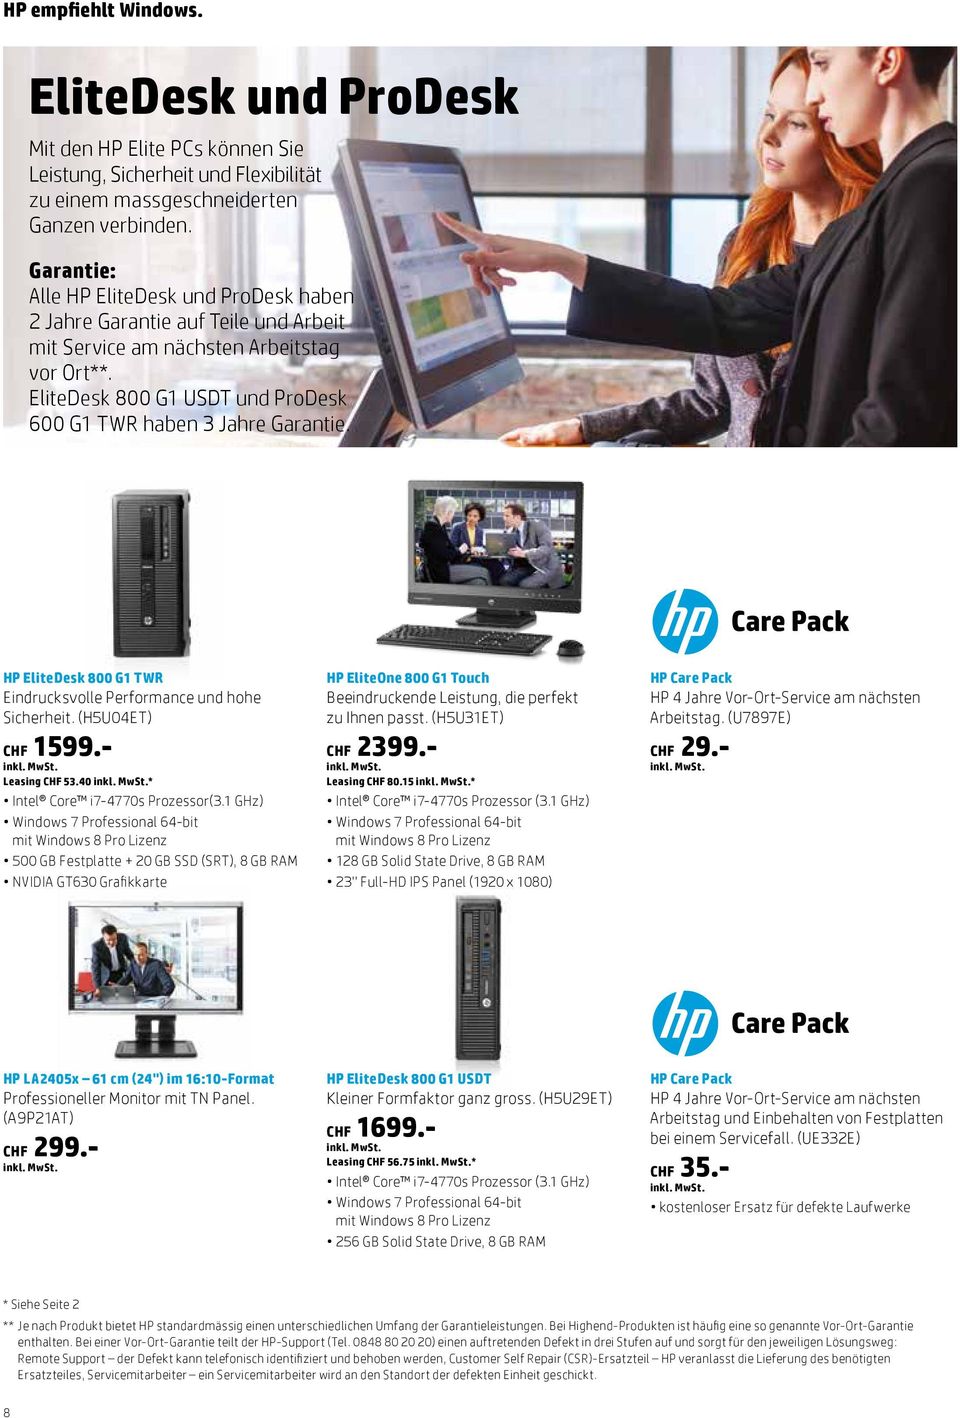 HP EliteDesk 800 G1 TWR Eindrucksvolle Performance und hohe Sicherheit. (H5U04ET) CHF 1599.- Leasing CHF 53.40 * Intel Core i7-4770s Prozessor(3.